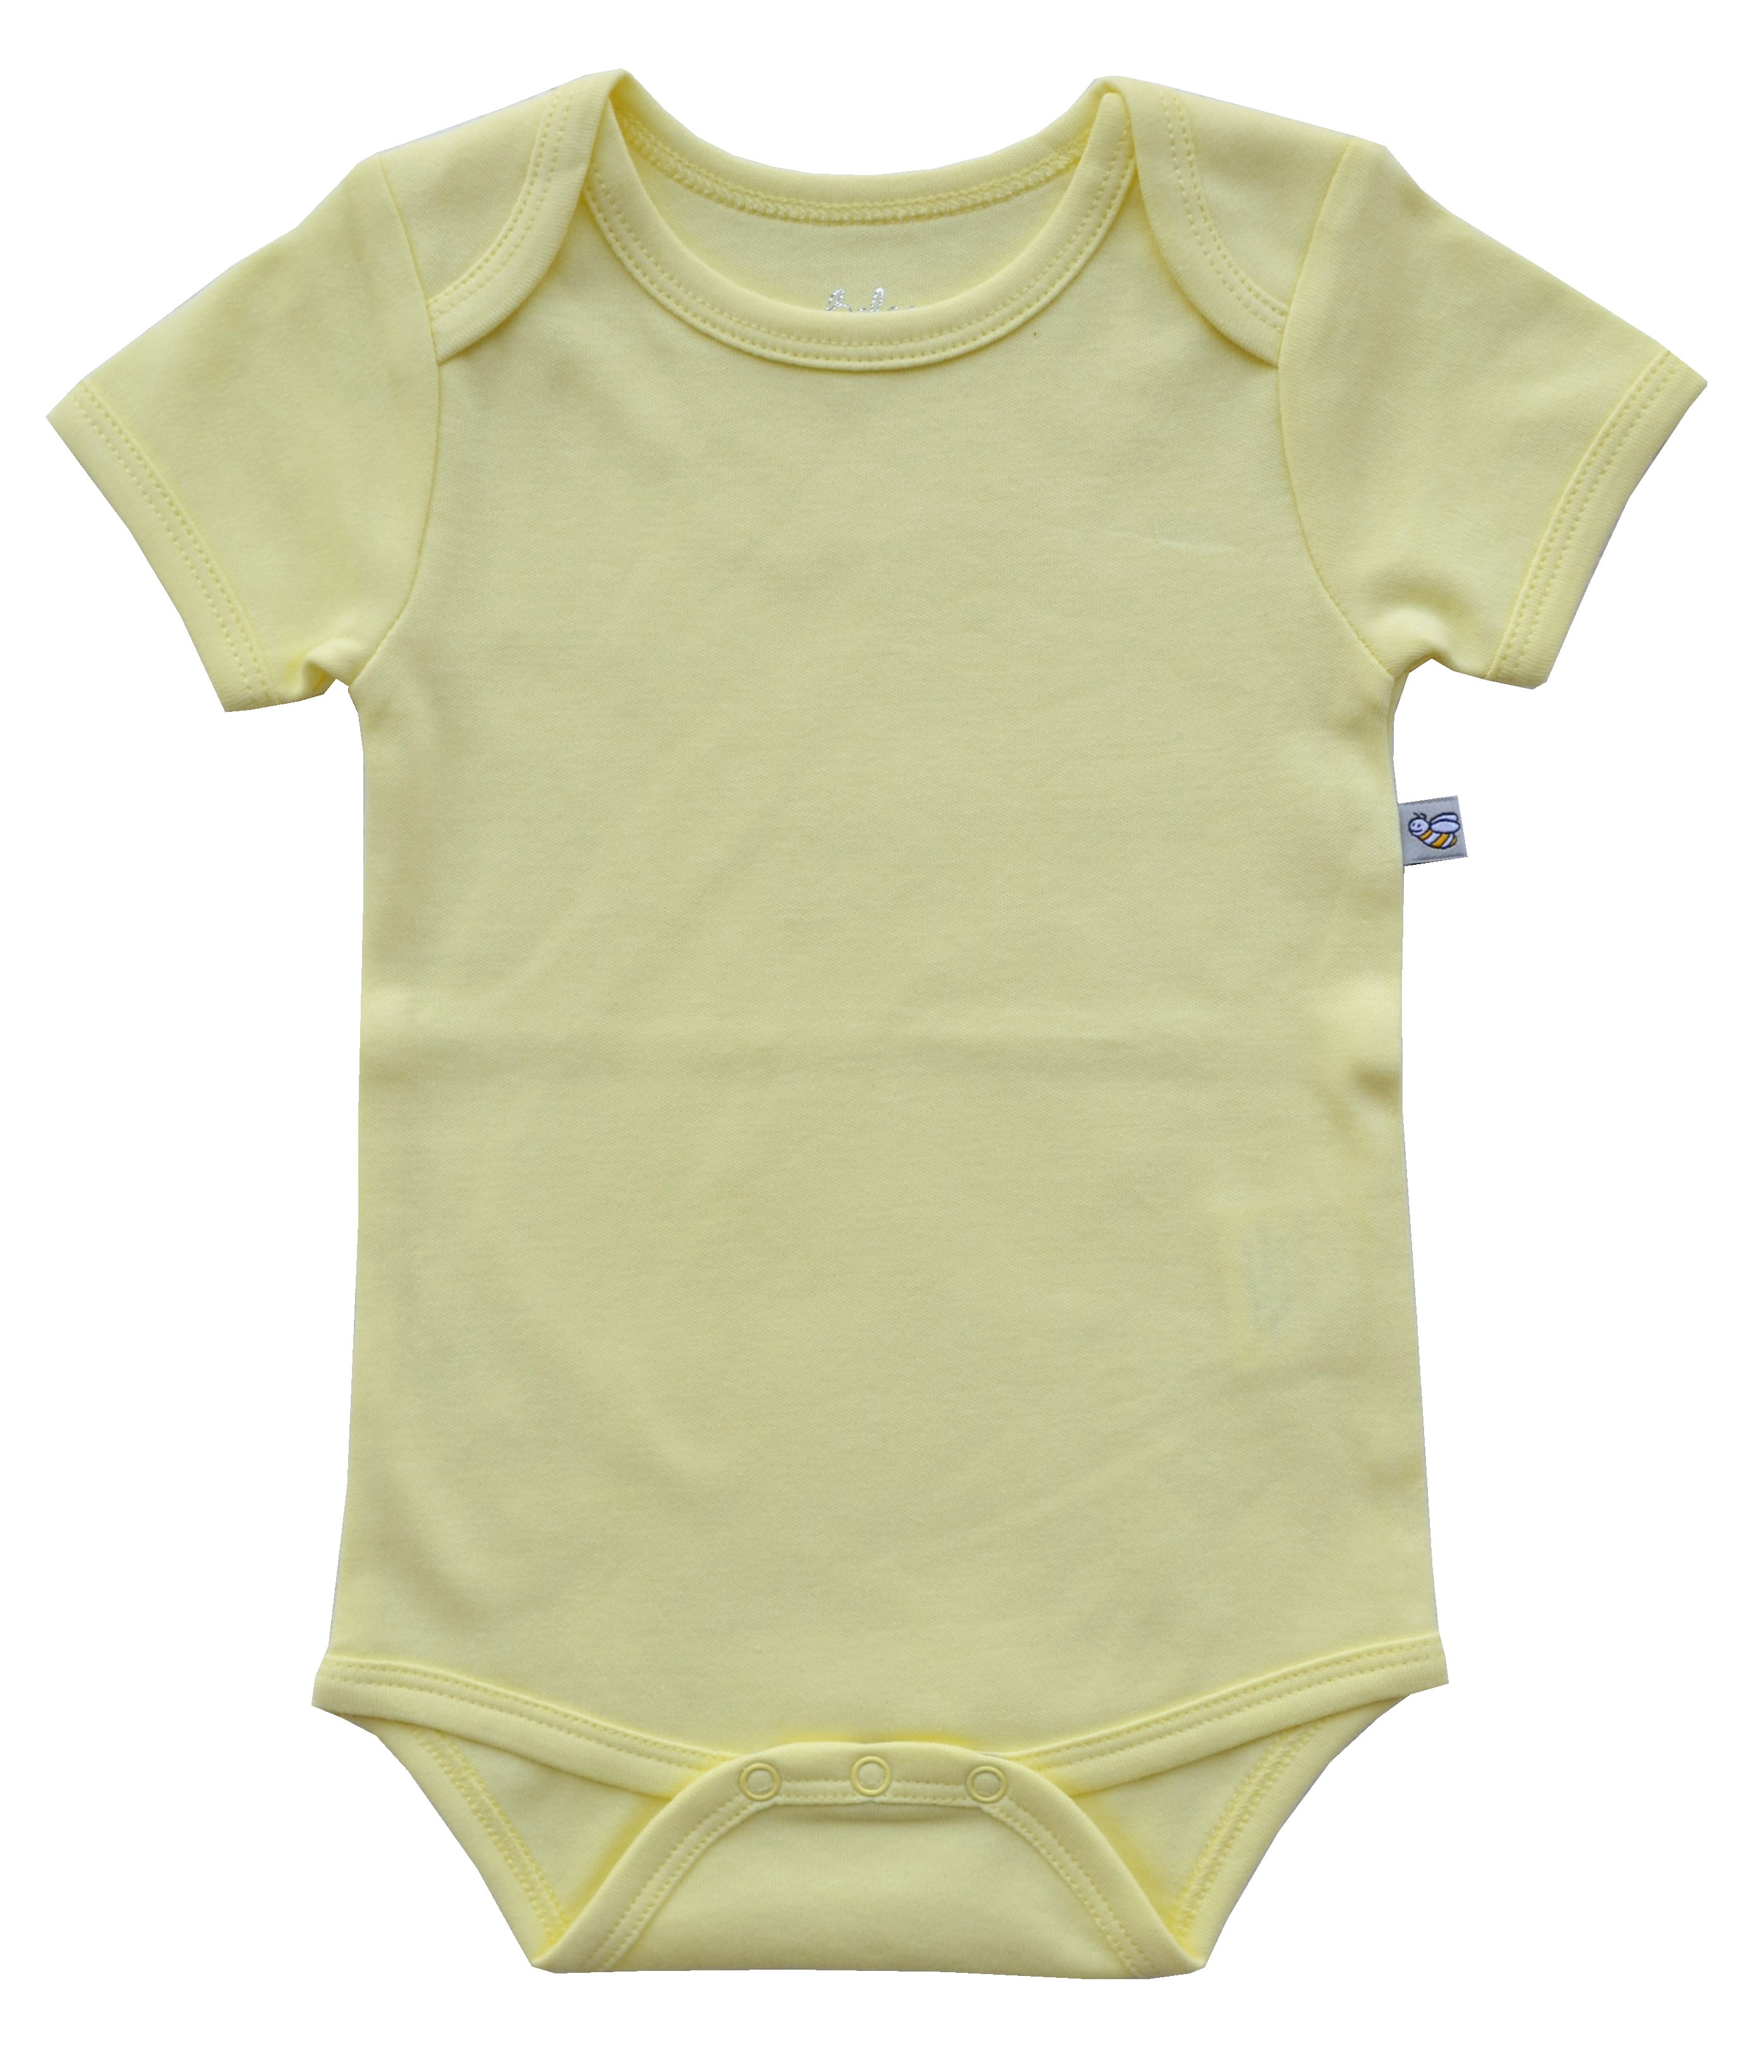 Yellow Baby Body (100% Cotton Interlock Biowash)